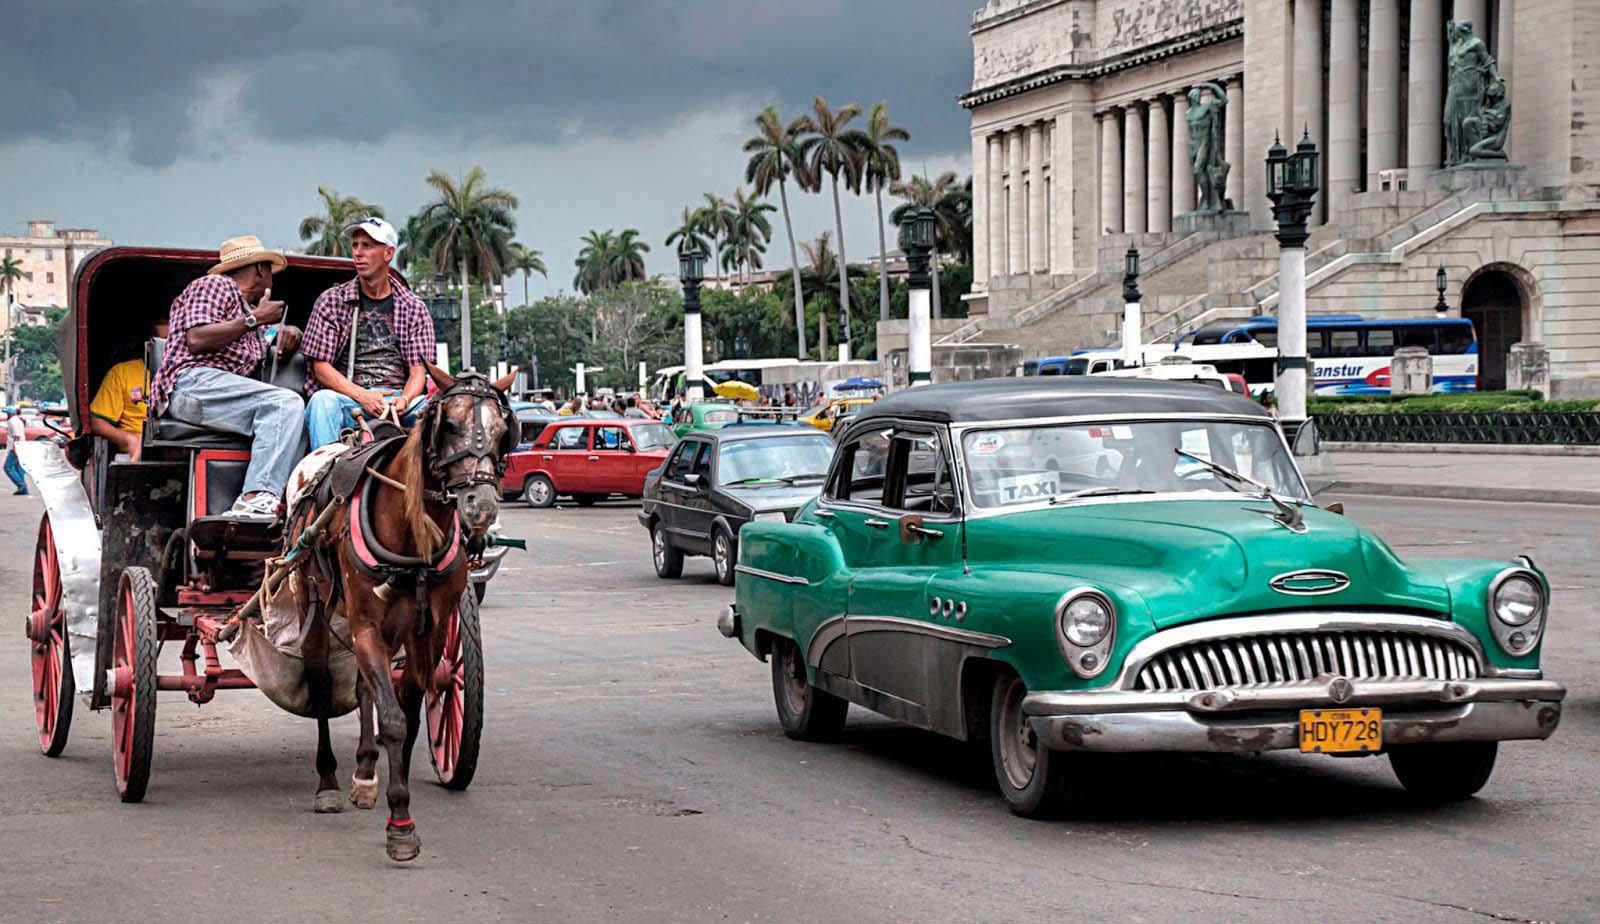 L'Avana Cuba Caribi 2